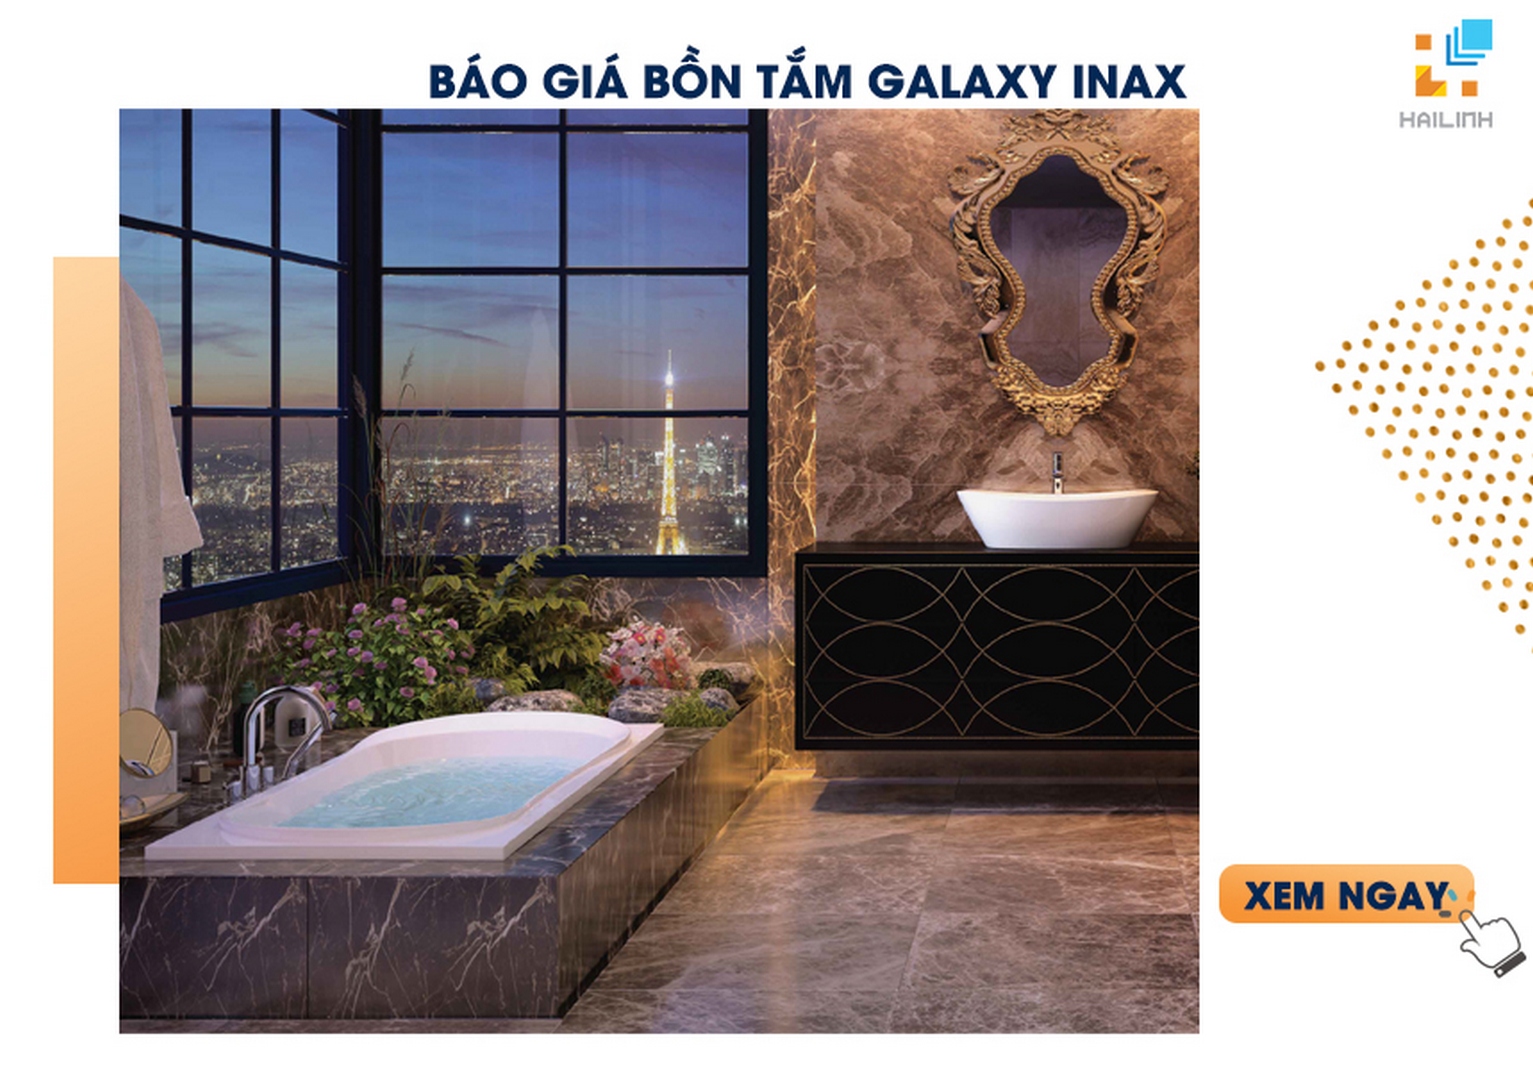 Báo giá bồn tắm Galaxy INAX